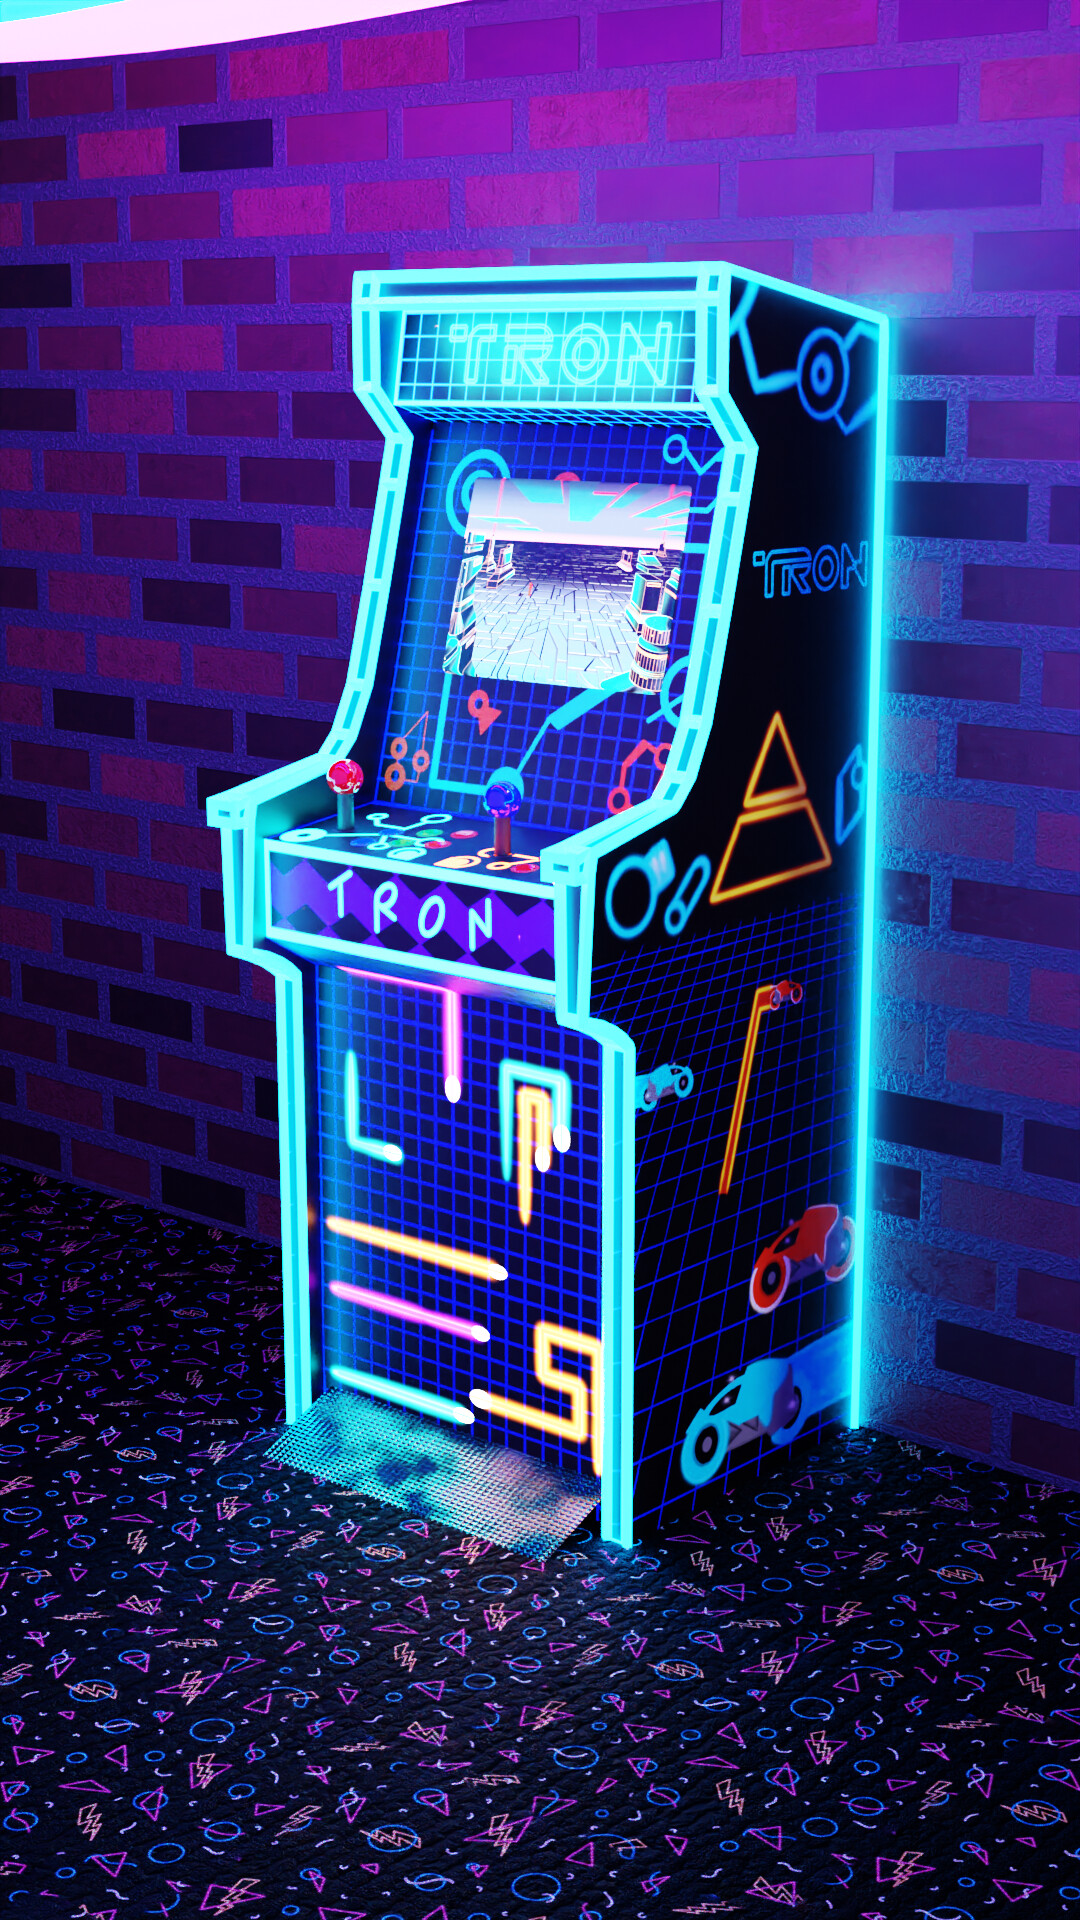 ArtStation - Tron Arcade Machine